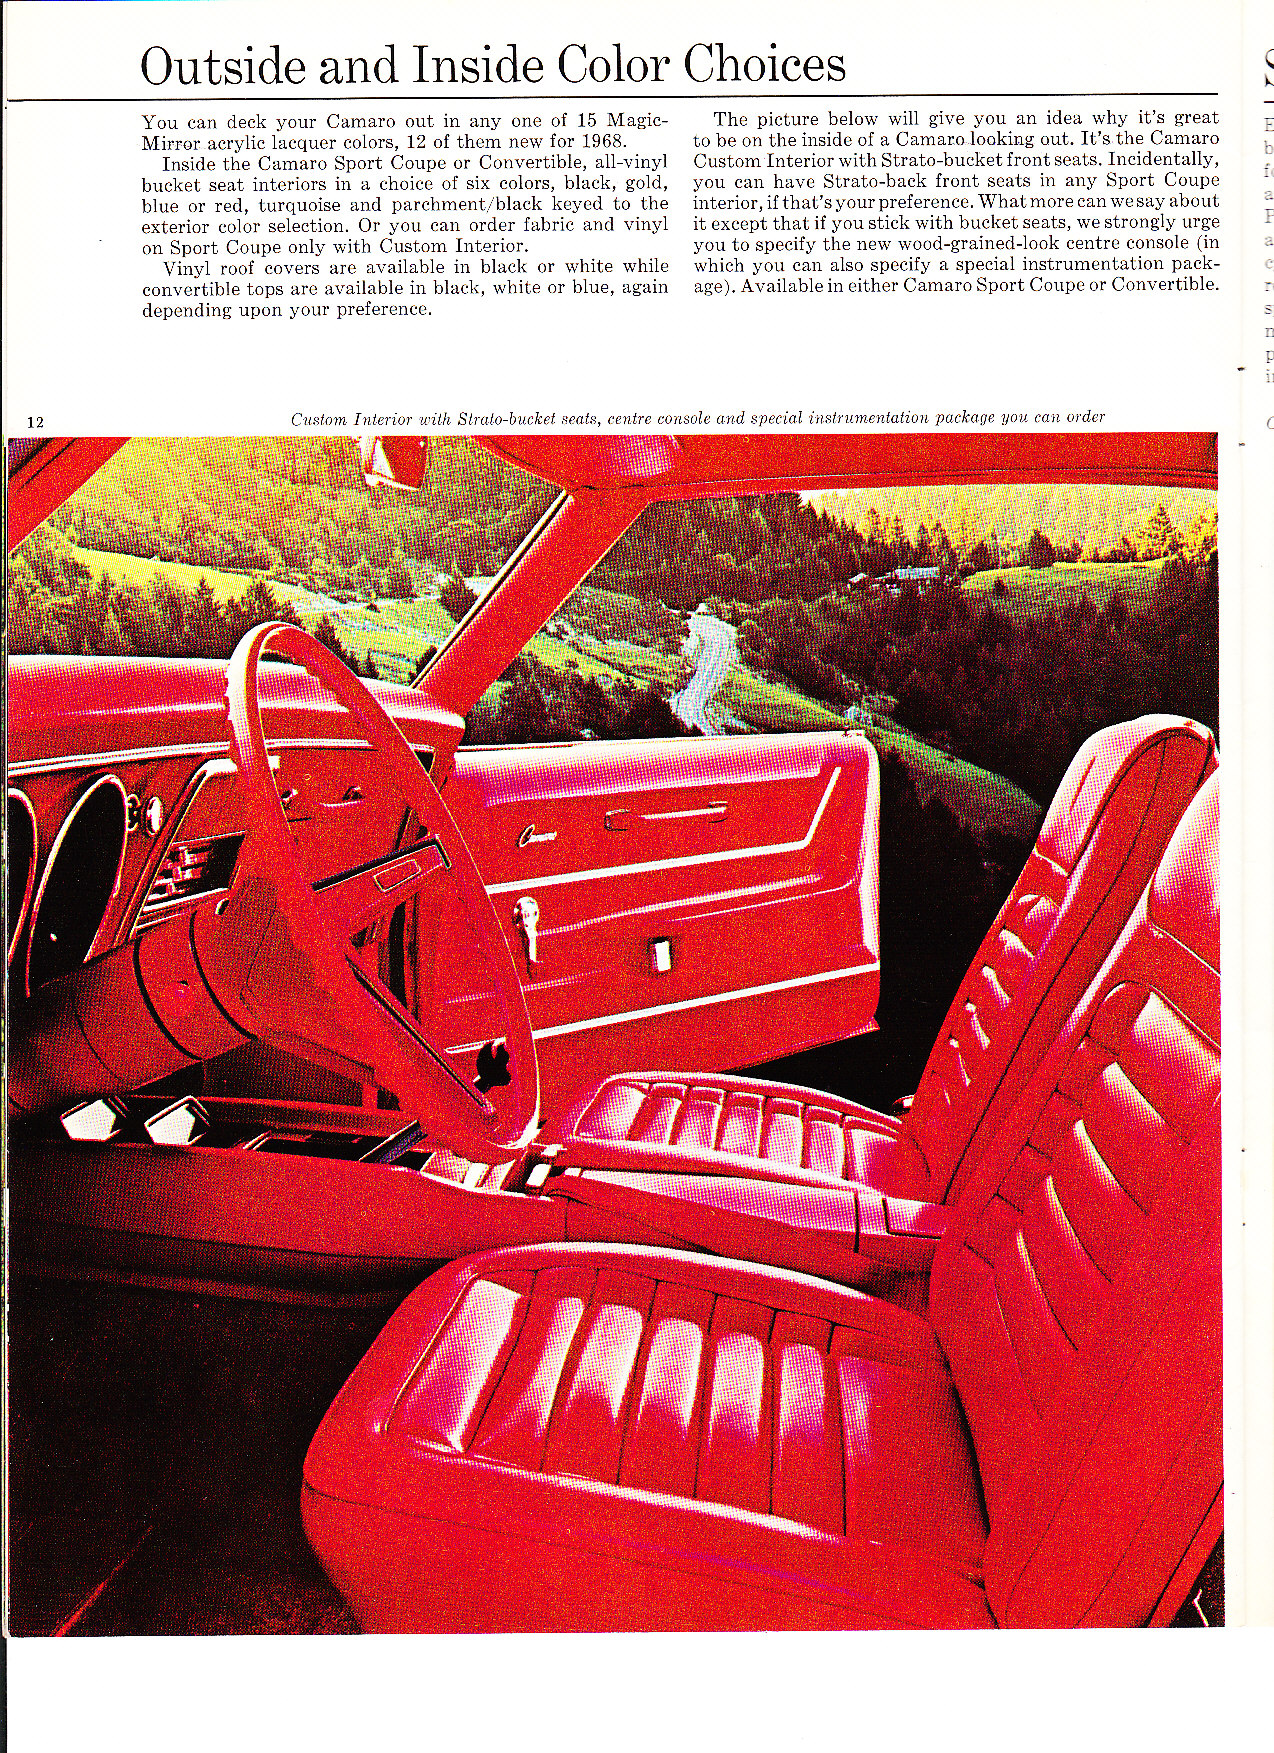 1968 Chev Camaro Brochure Page 15